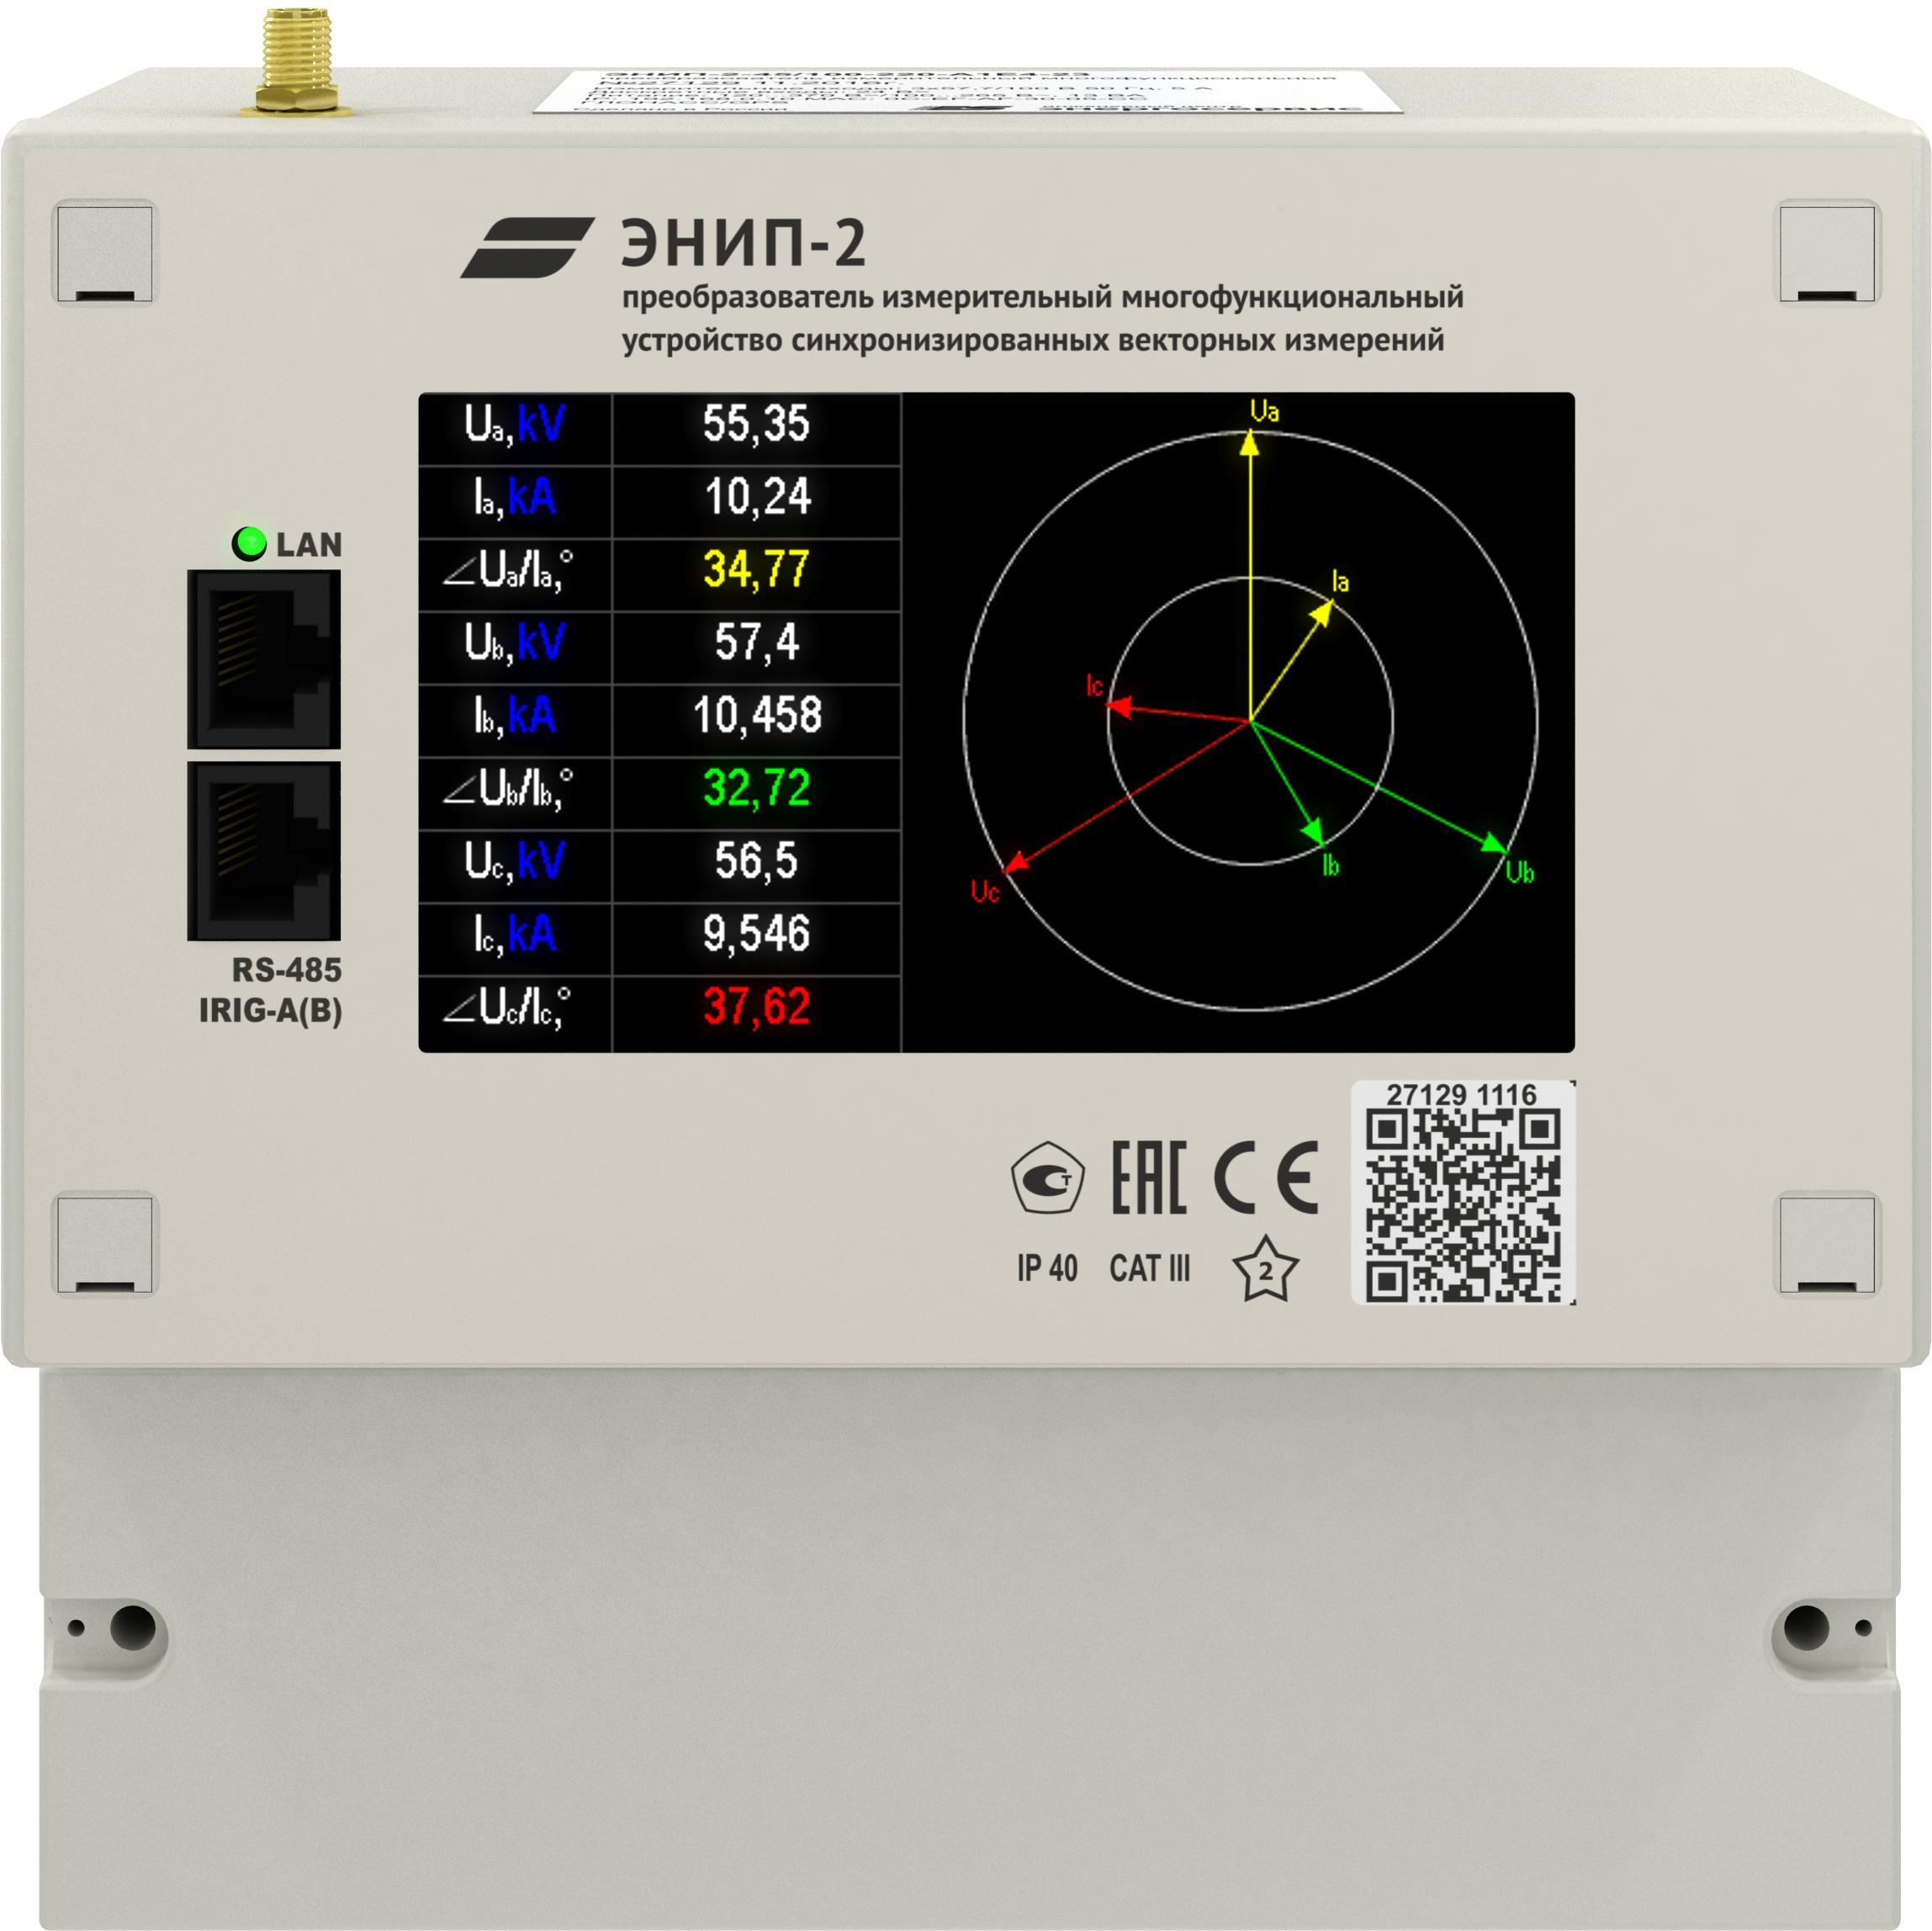 ЭНИП-2 PMU со встроенным GPS-приёмником